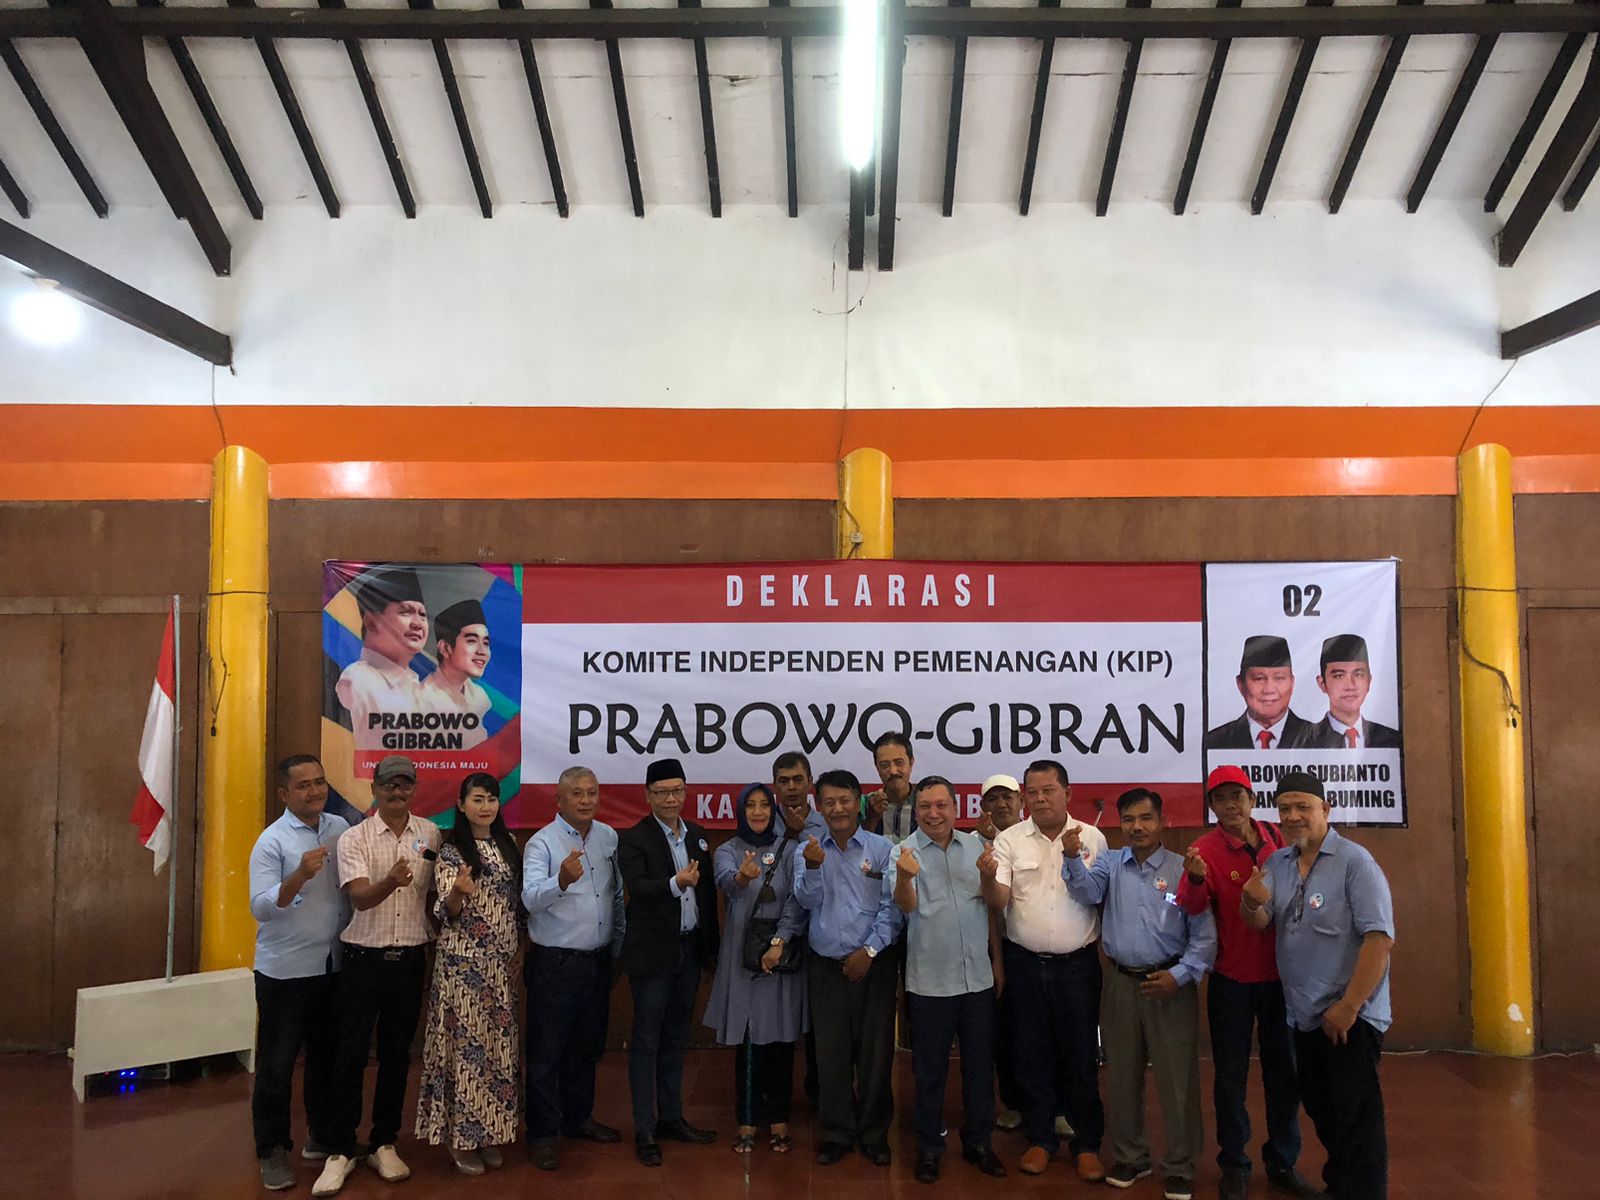 Menuju Kota Industri Berbasis Agraris, KIP-Prabowo Jember Bergerak untuk Menang